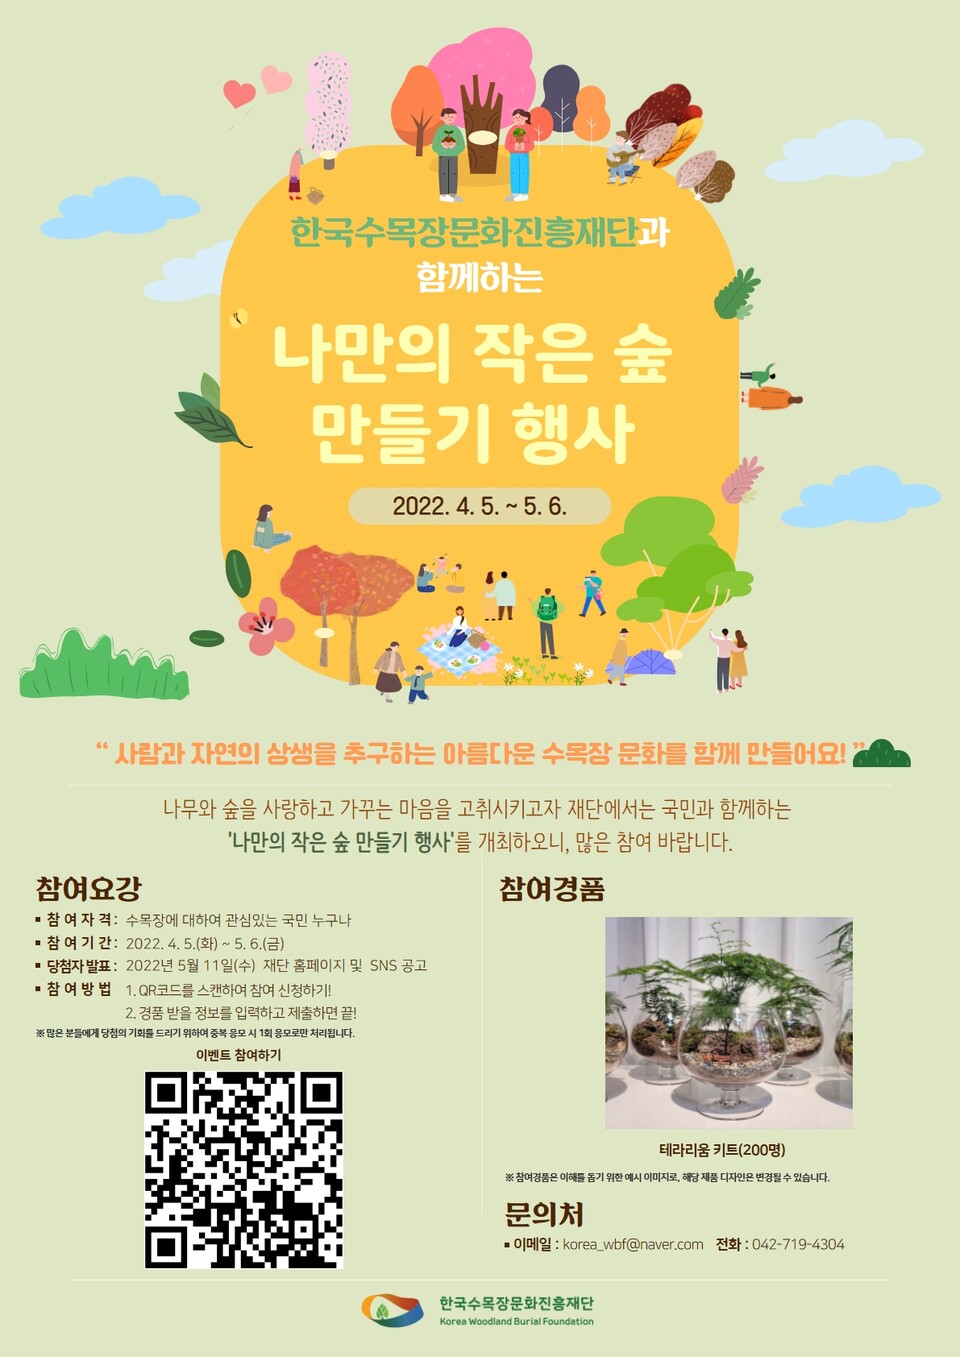 한국수목장문화진흥재단이 자연친화적인 수목장 문화를 확산하기 위해 ‘나만의 작은 숲 만들기 행사’를 실시한다.